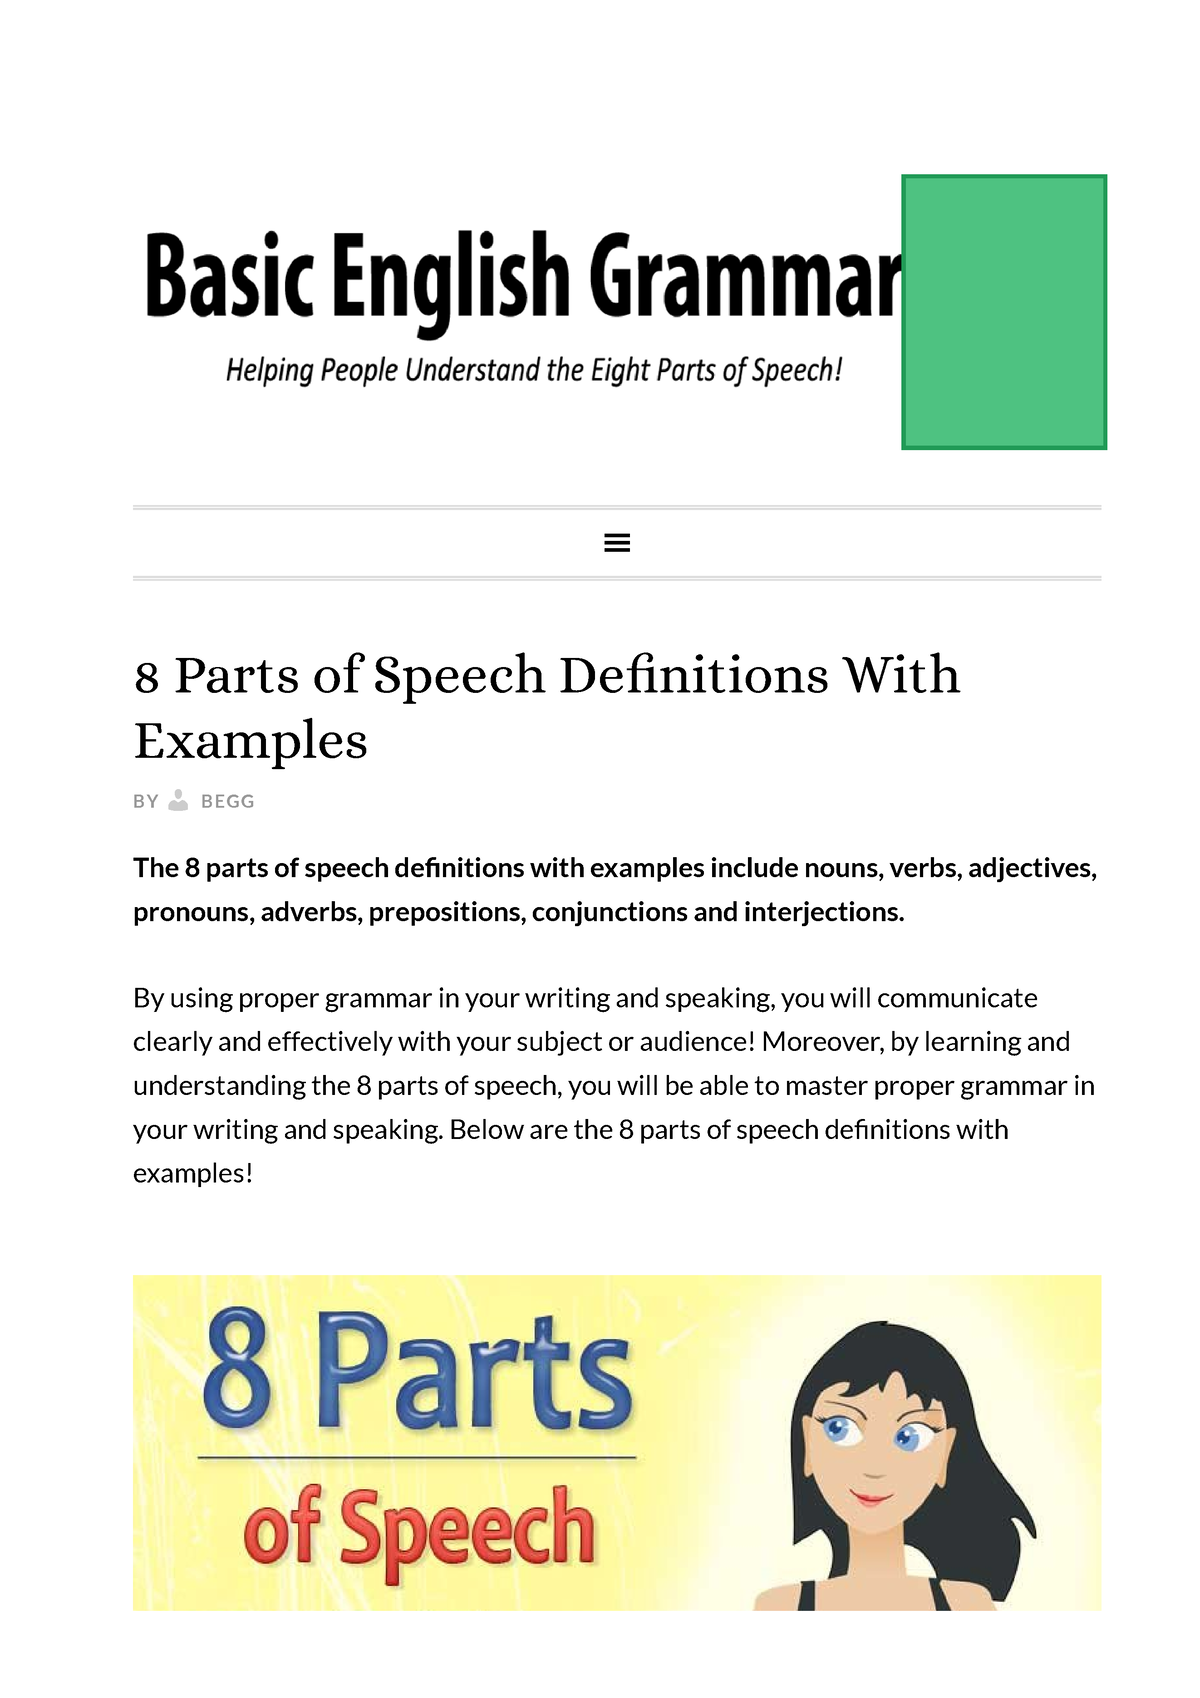 8 Parts of Speech in English Grammar